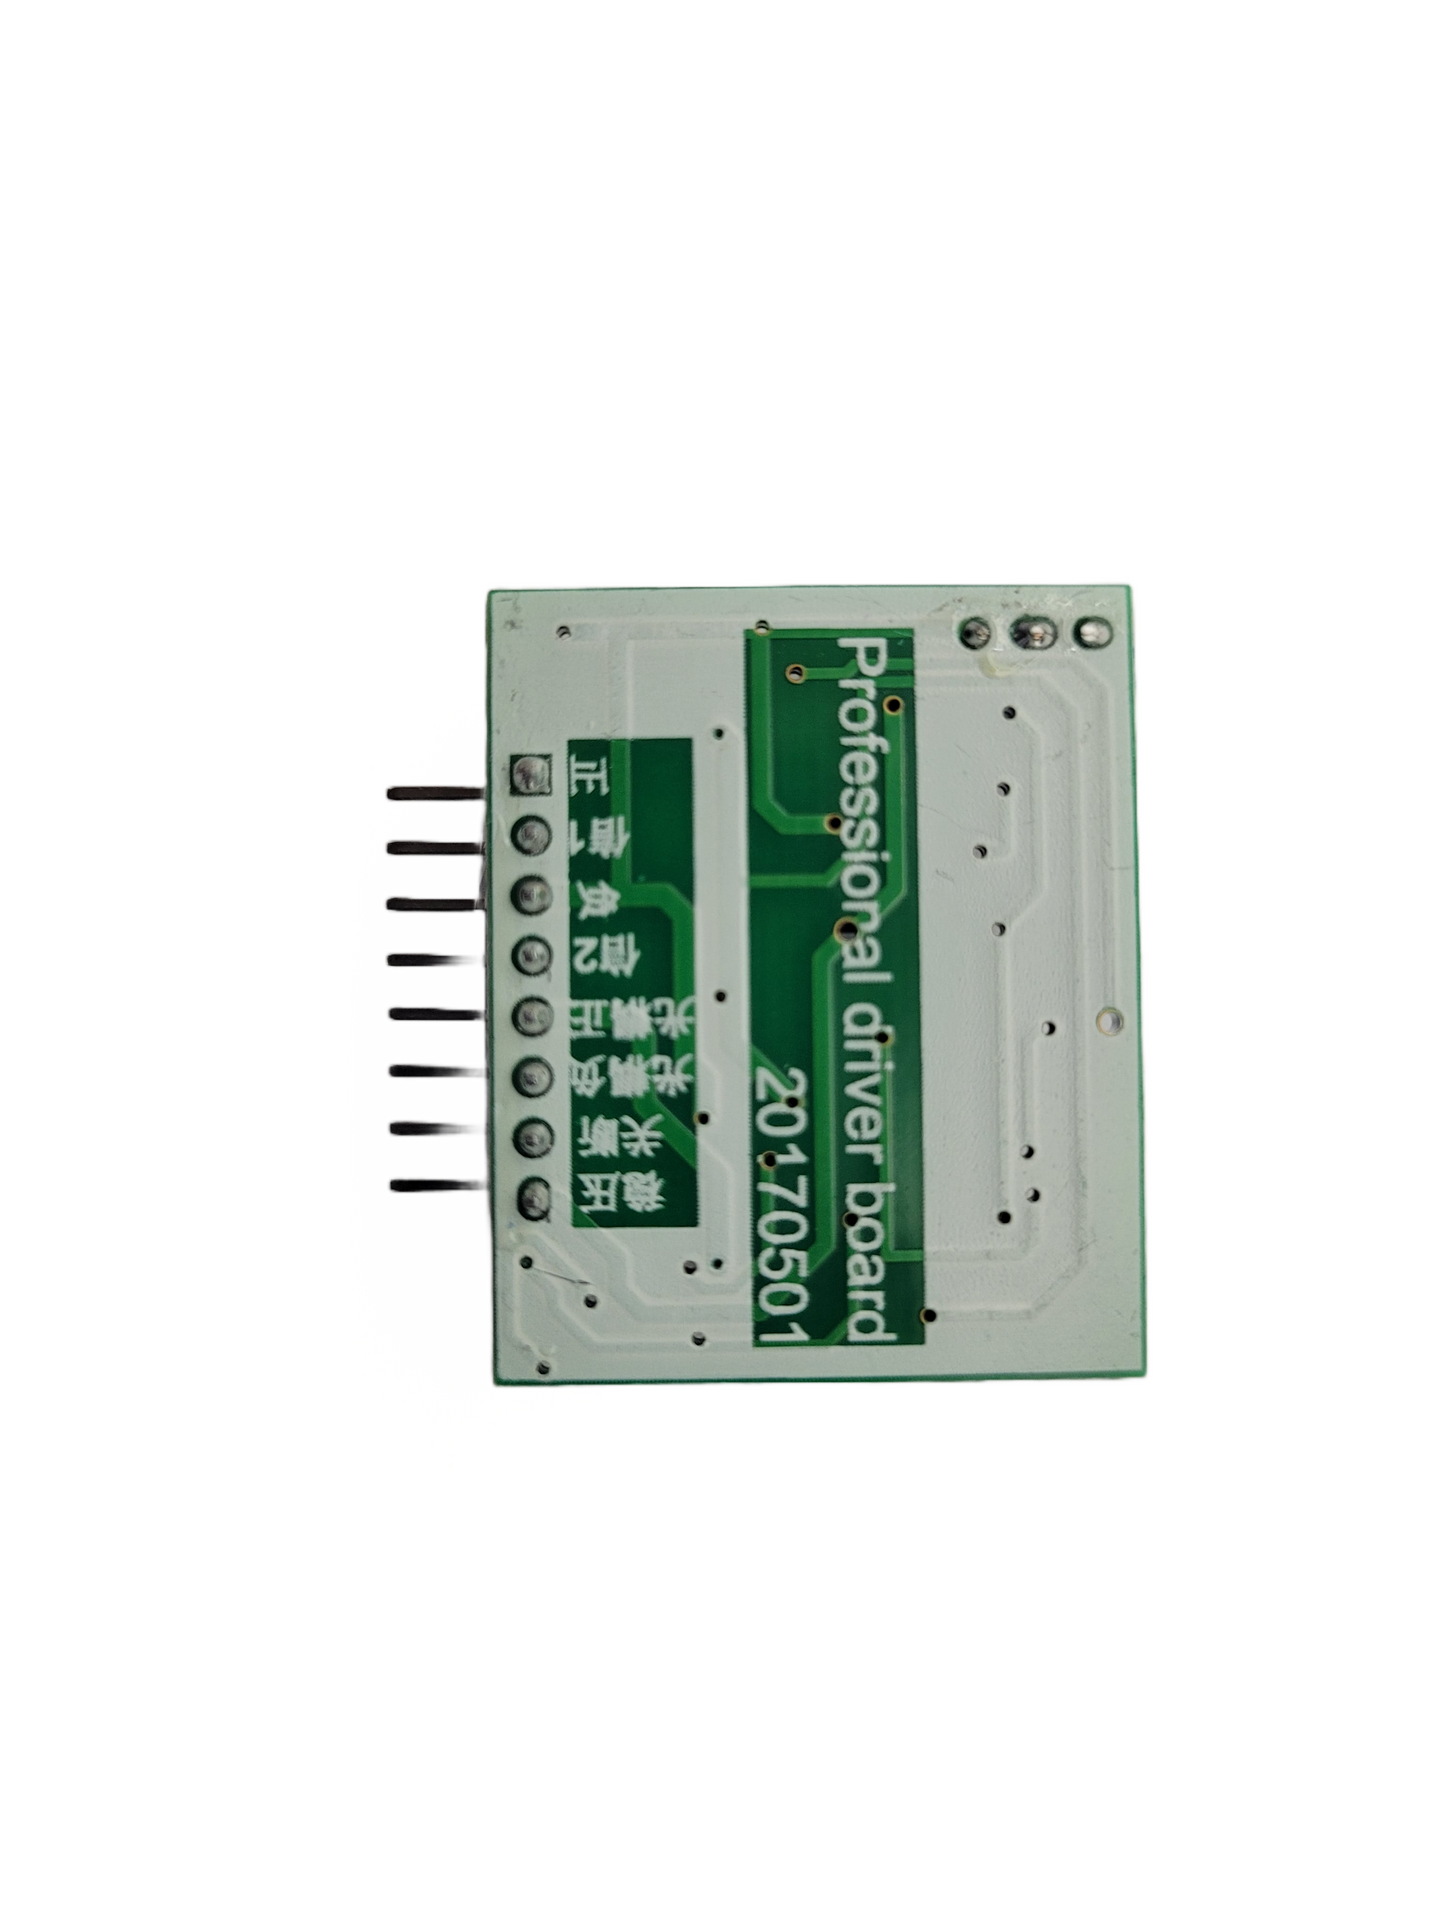 SG3525 LM358 Inverter Board 12V-24V Preamp Driver Module Frequency Adjustable 1A